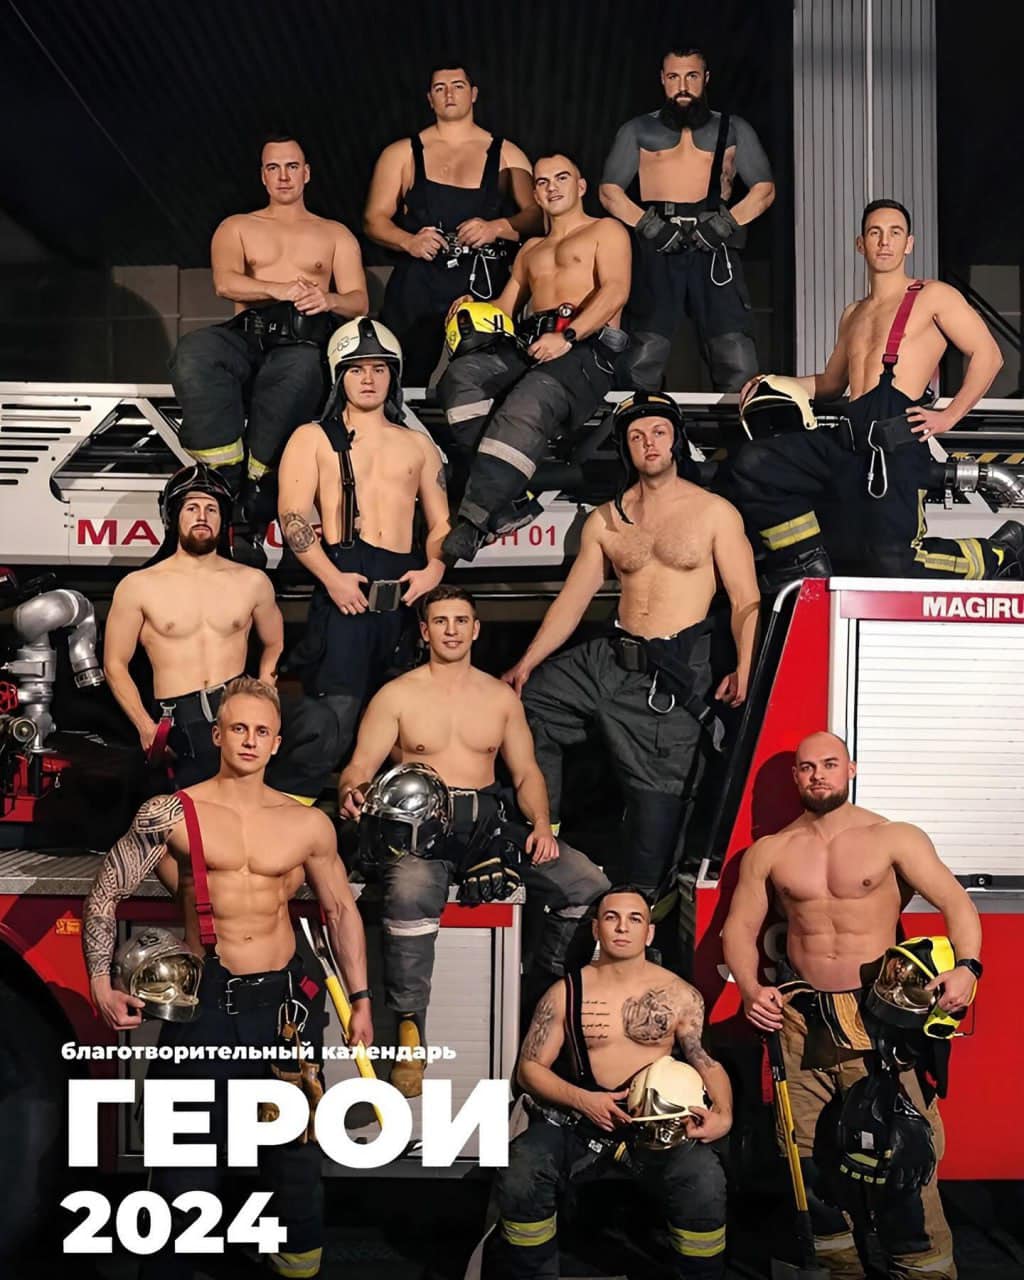 Пожарные из Санкт-Петербурга снялись для календаря: наш ответ австралийским пожарным!